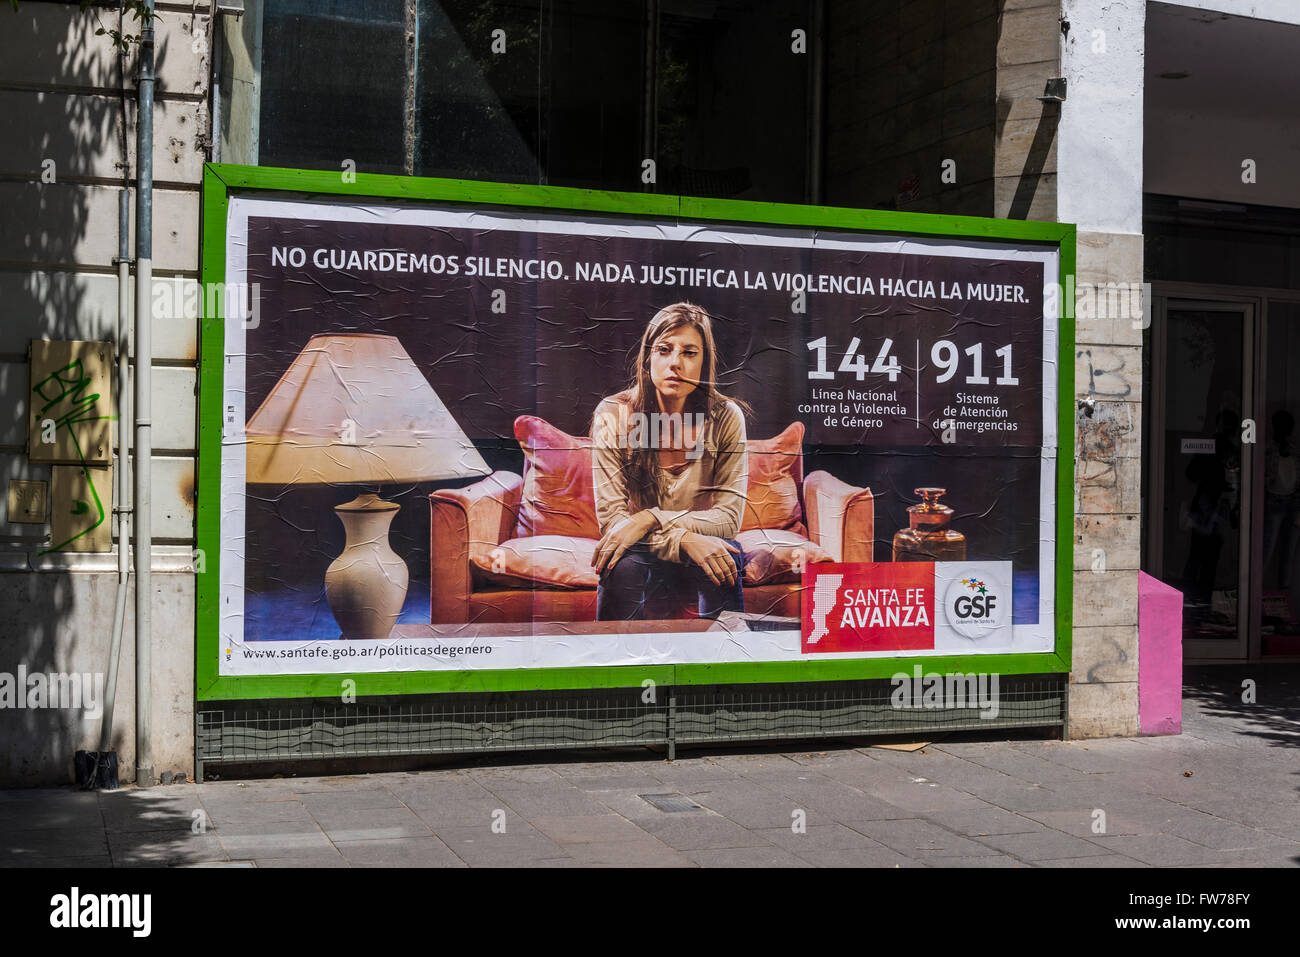 Government billboard campaign against domestic violence, Rosario, Santa Fe, Argentina Stock Photo